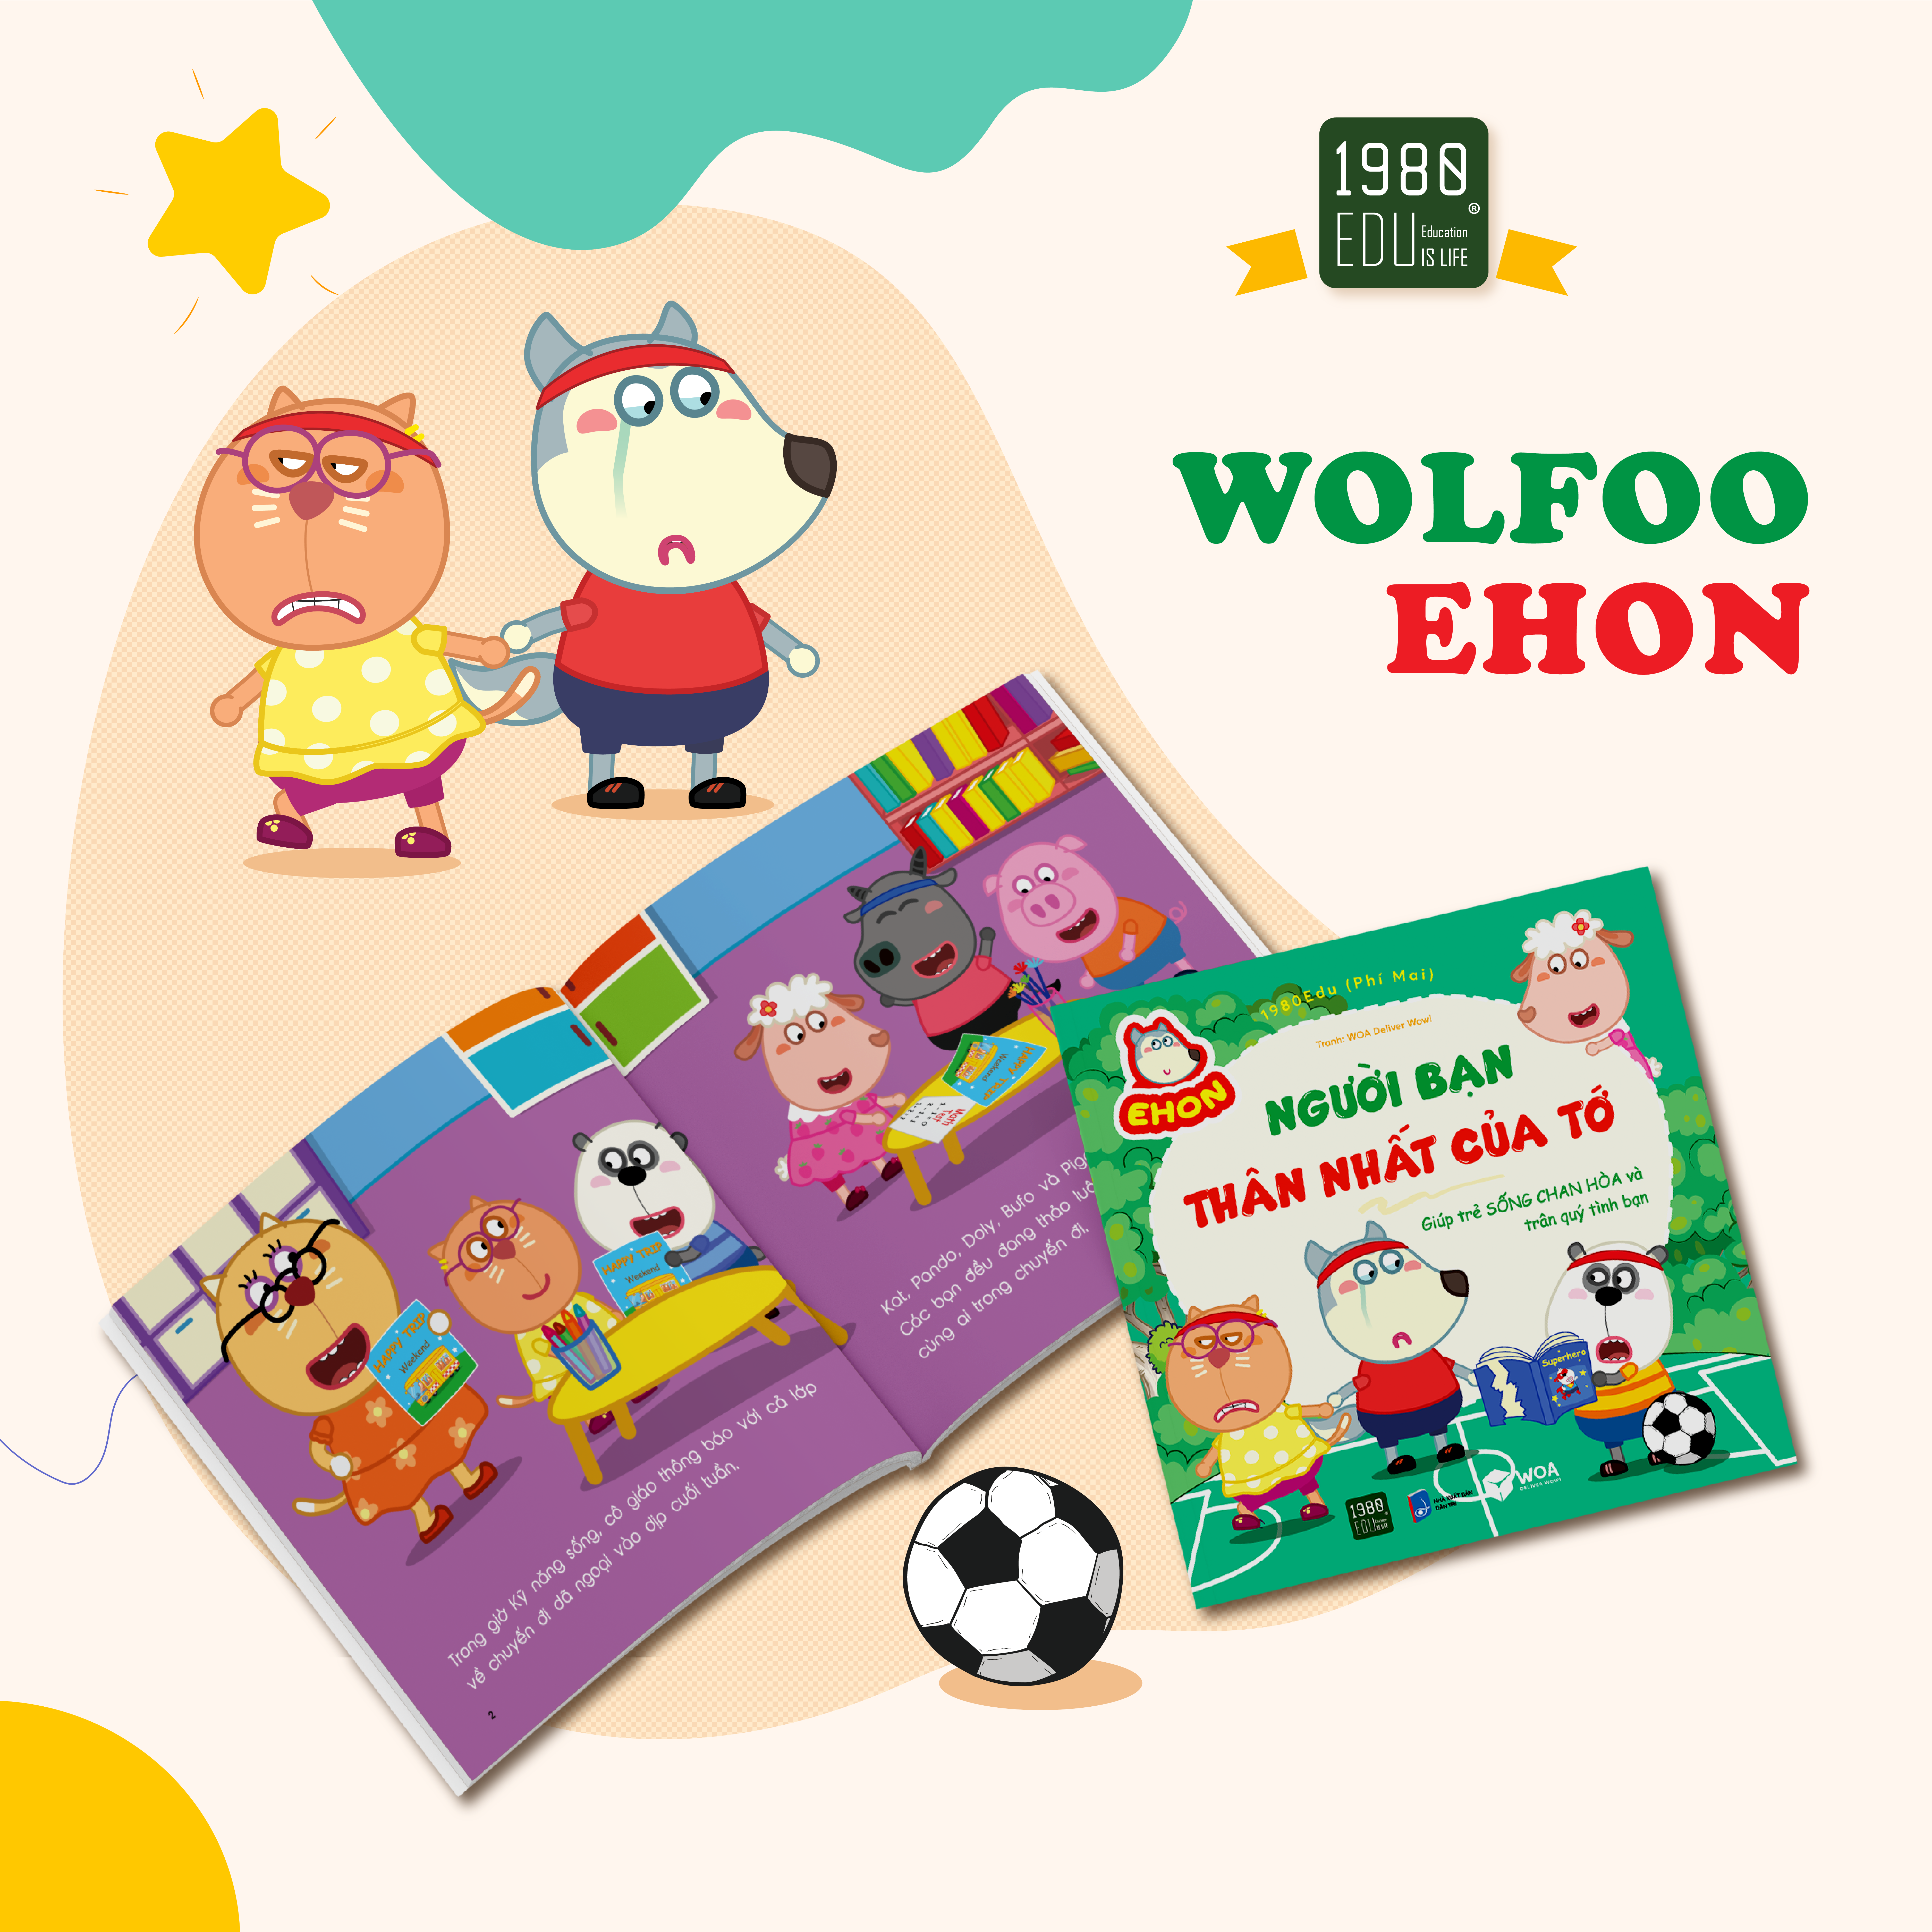 Wolfoo Ehon - Người Bạn Thân Nhất Của Tớ